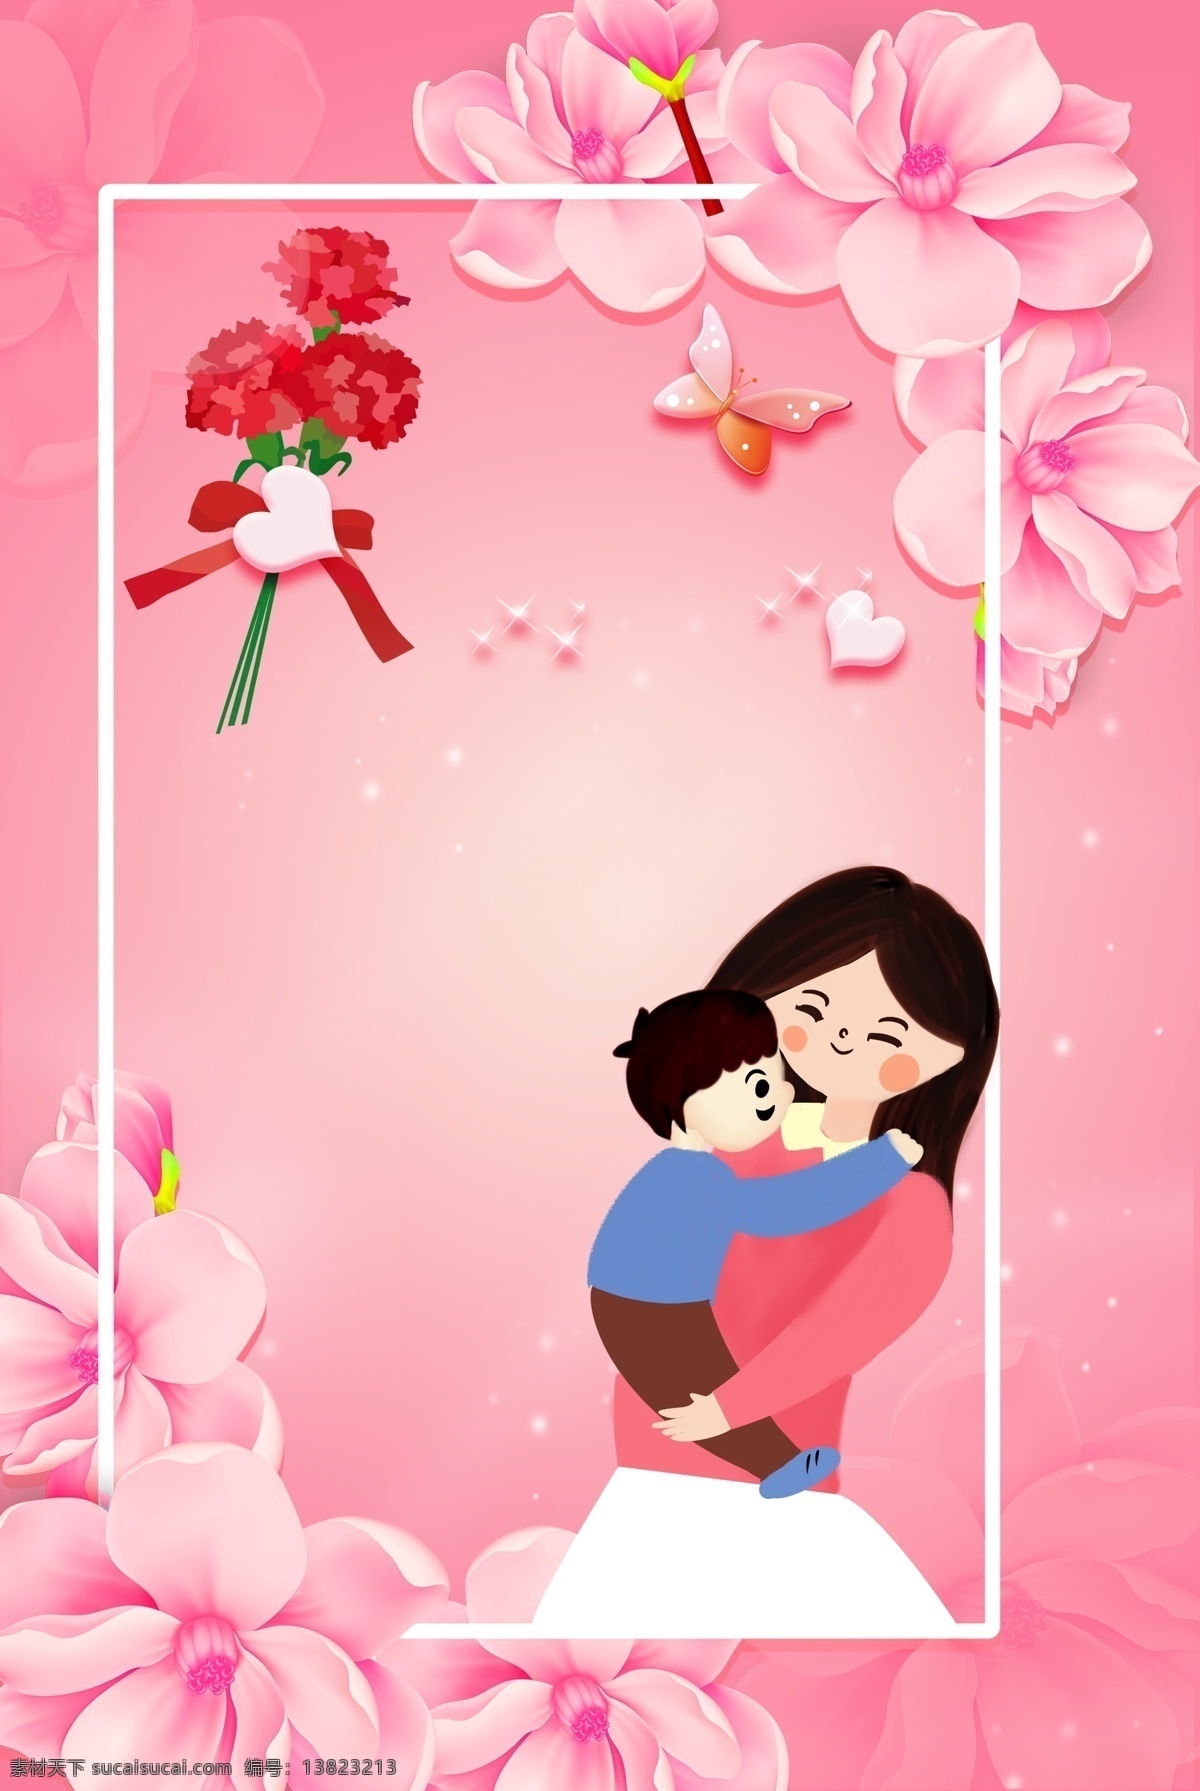 粉色 温馨 花卉 边框 母亲节 海报 背景 文艺 清新 卡通 手绘 质感 纹理